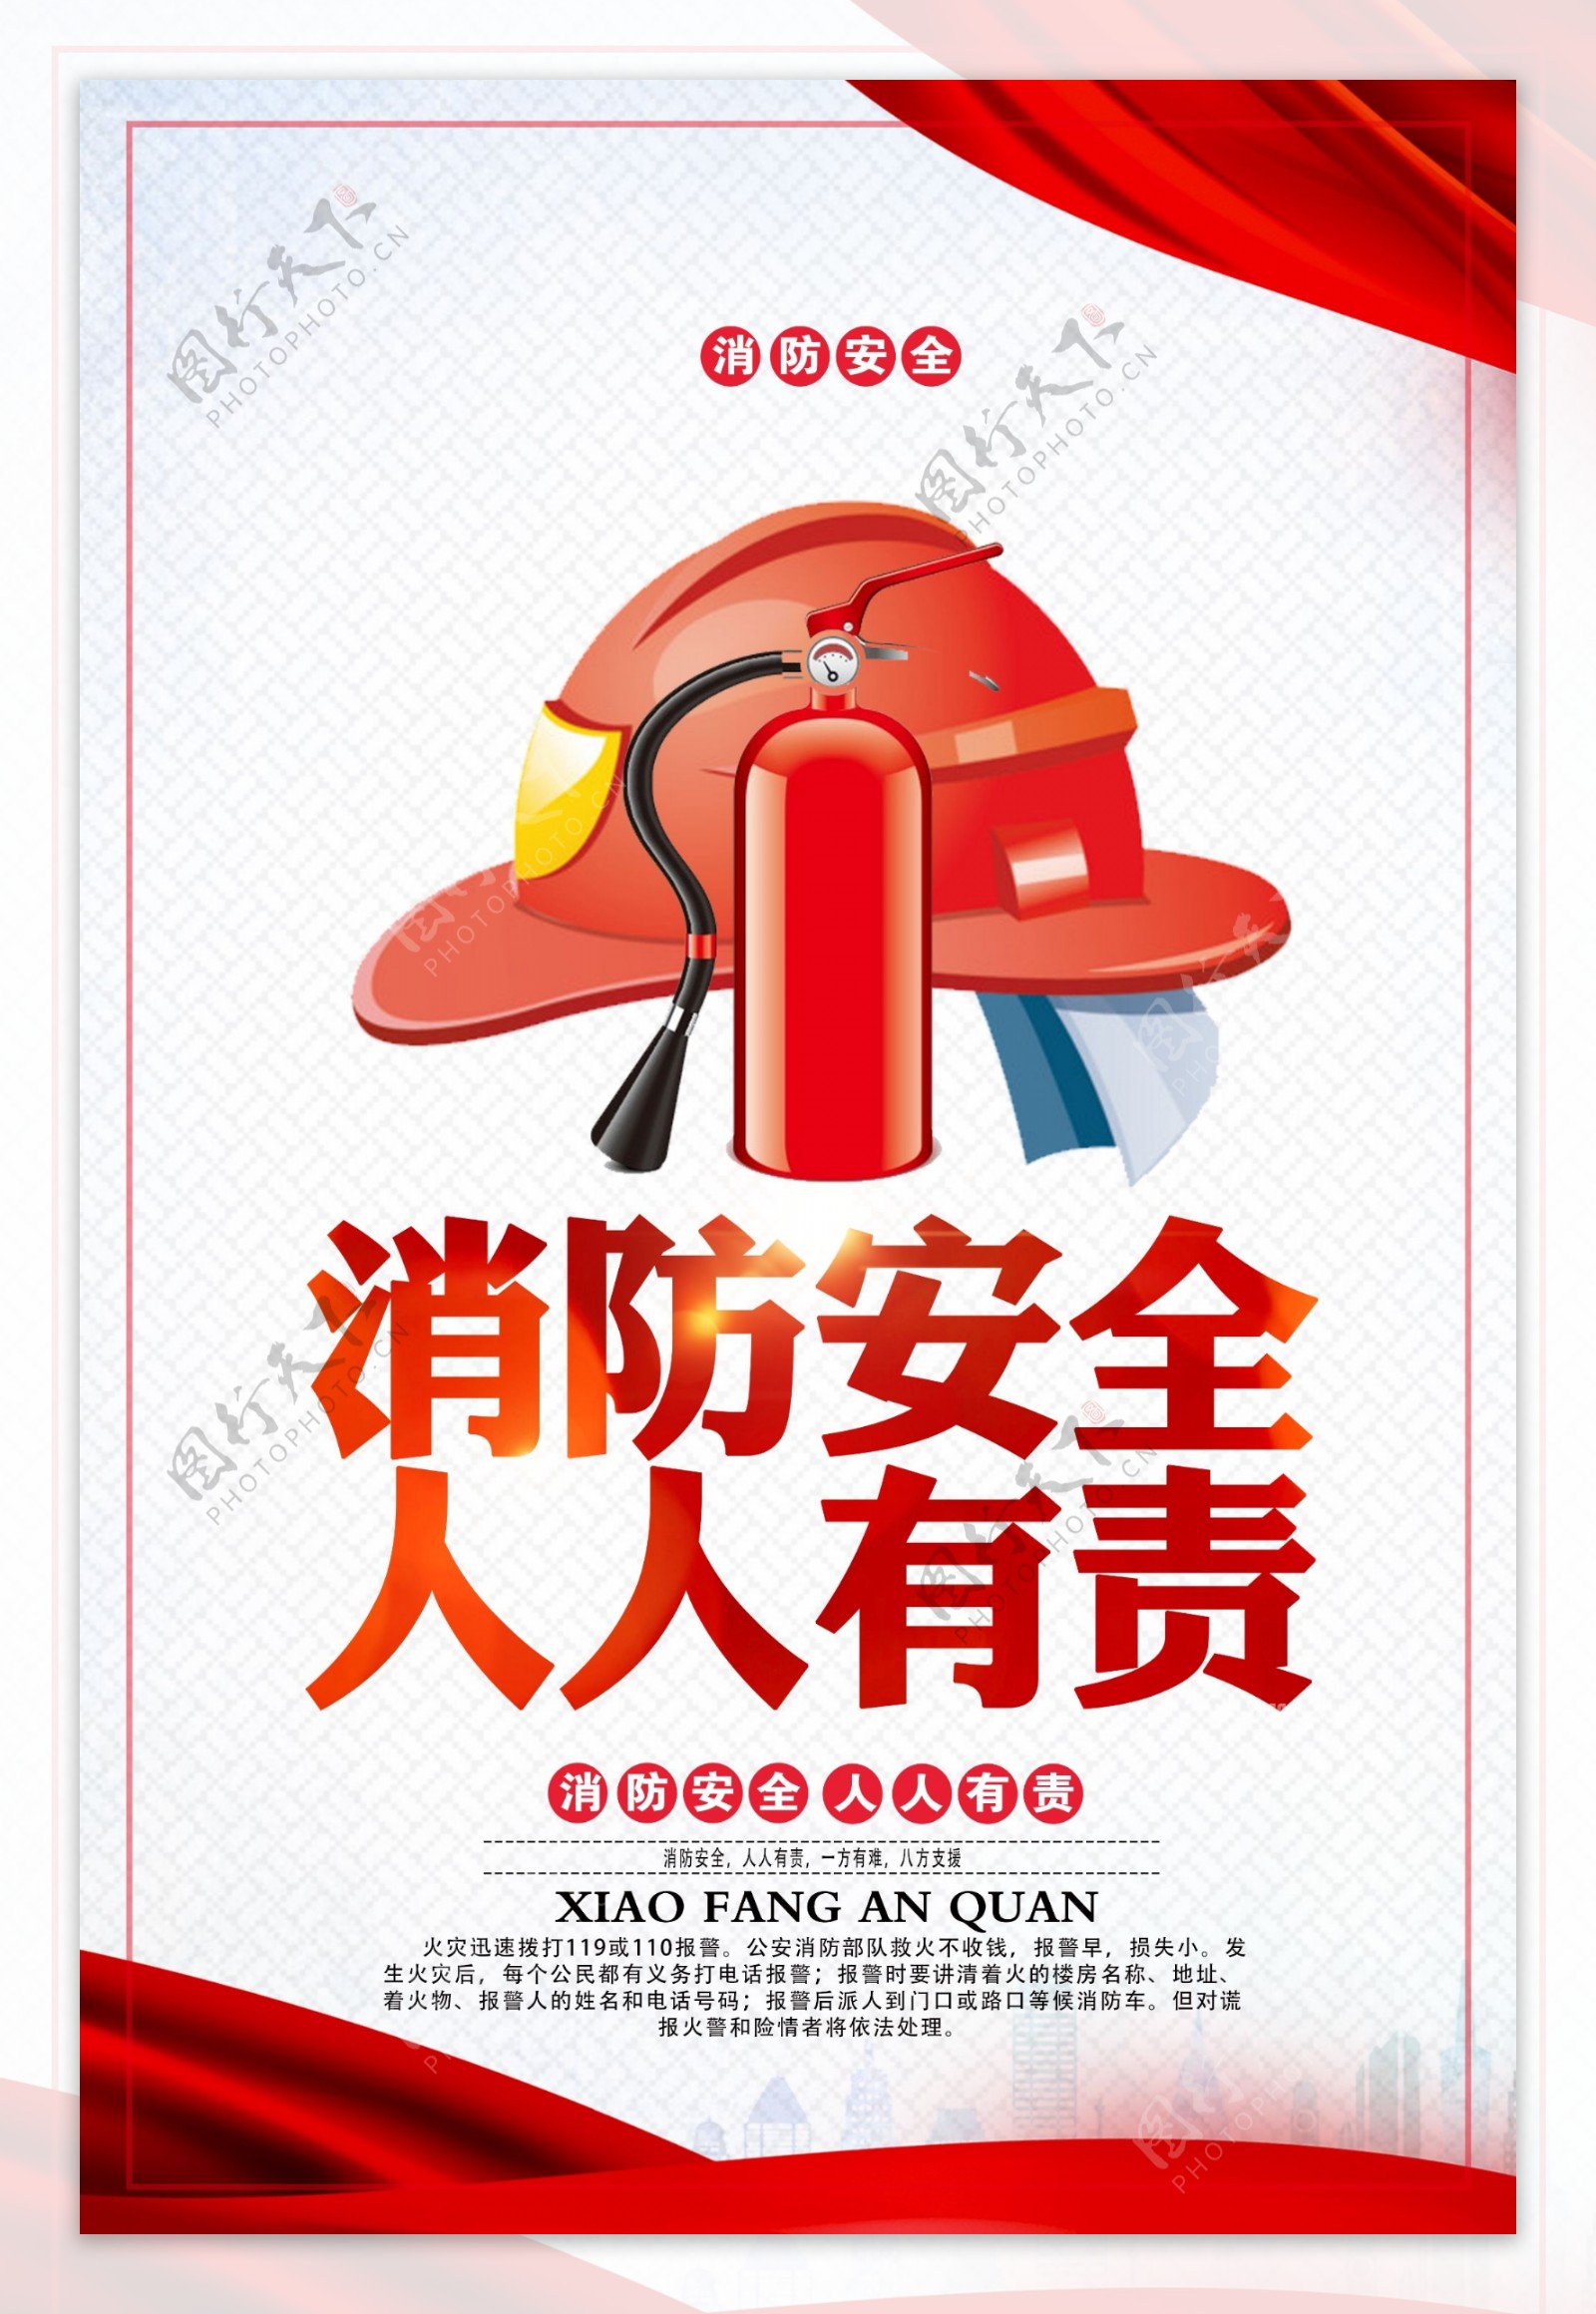 消防安全公益宣传活动海报素材